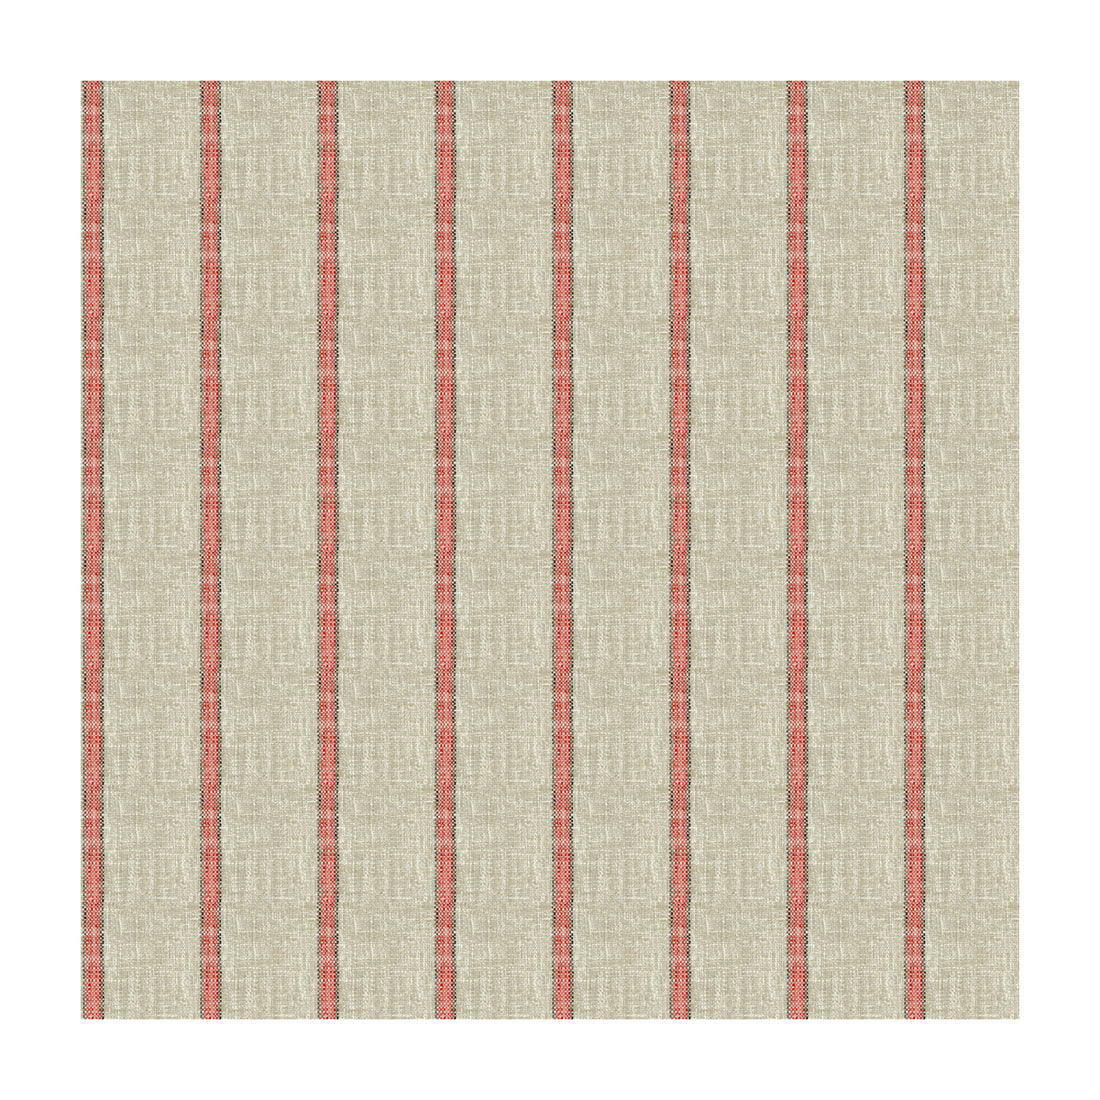 Kravet Basics fabric in 34087-716 color - pattern 34087.716.0 - by Kravet Basics